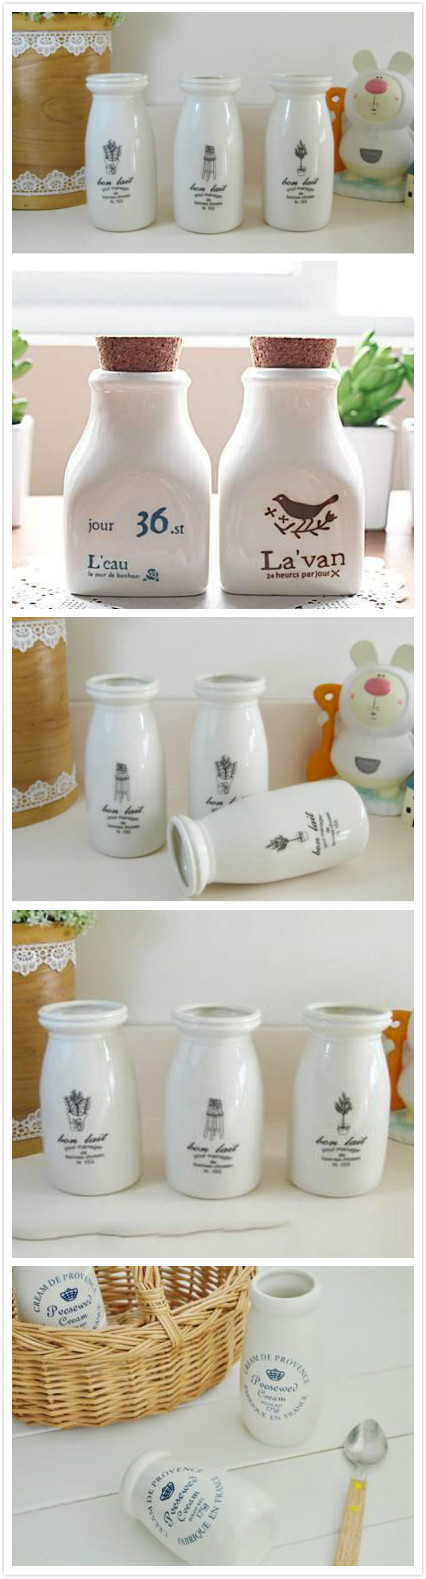 一款牛奶瓶创意包装设计案列_北京包装设计公司_高瑞品牌